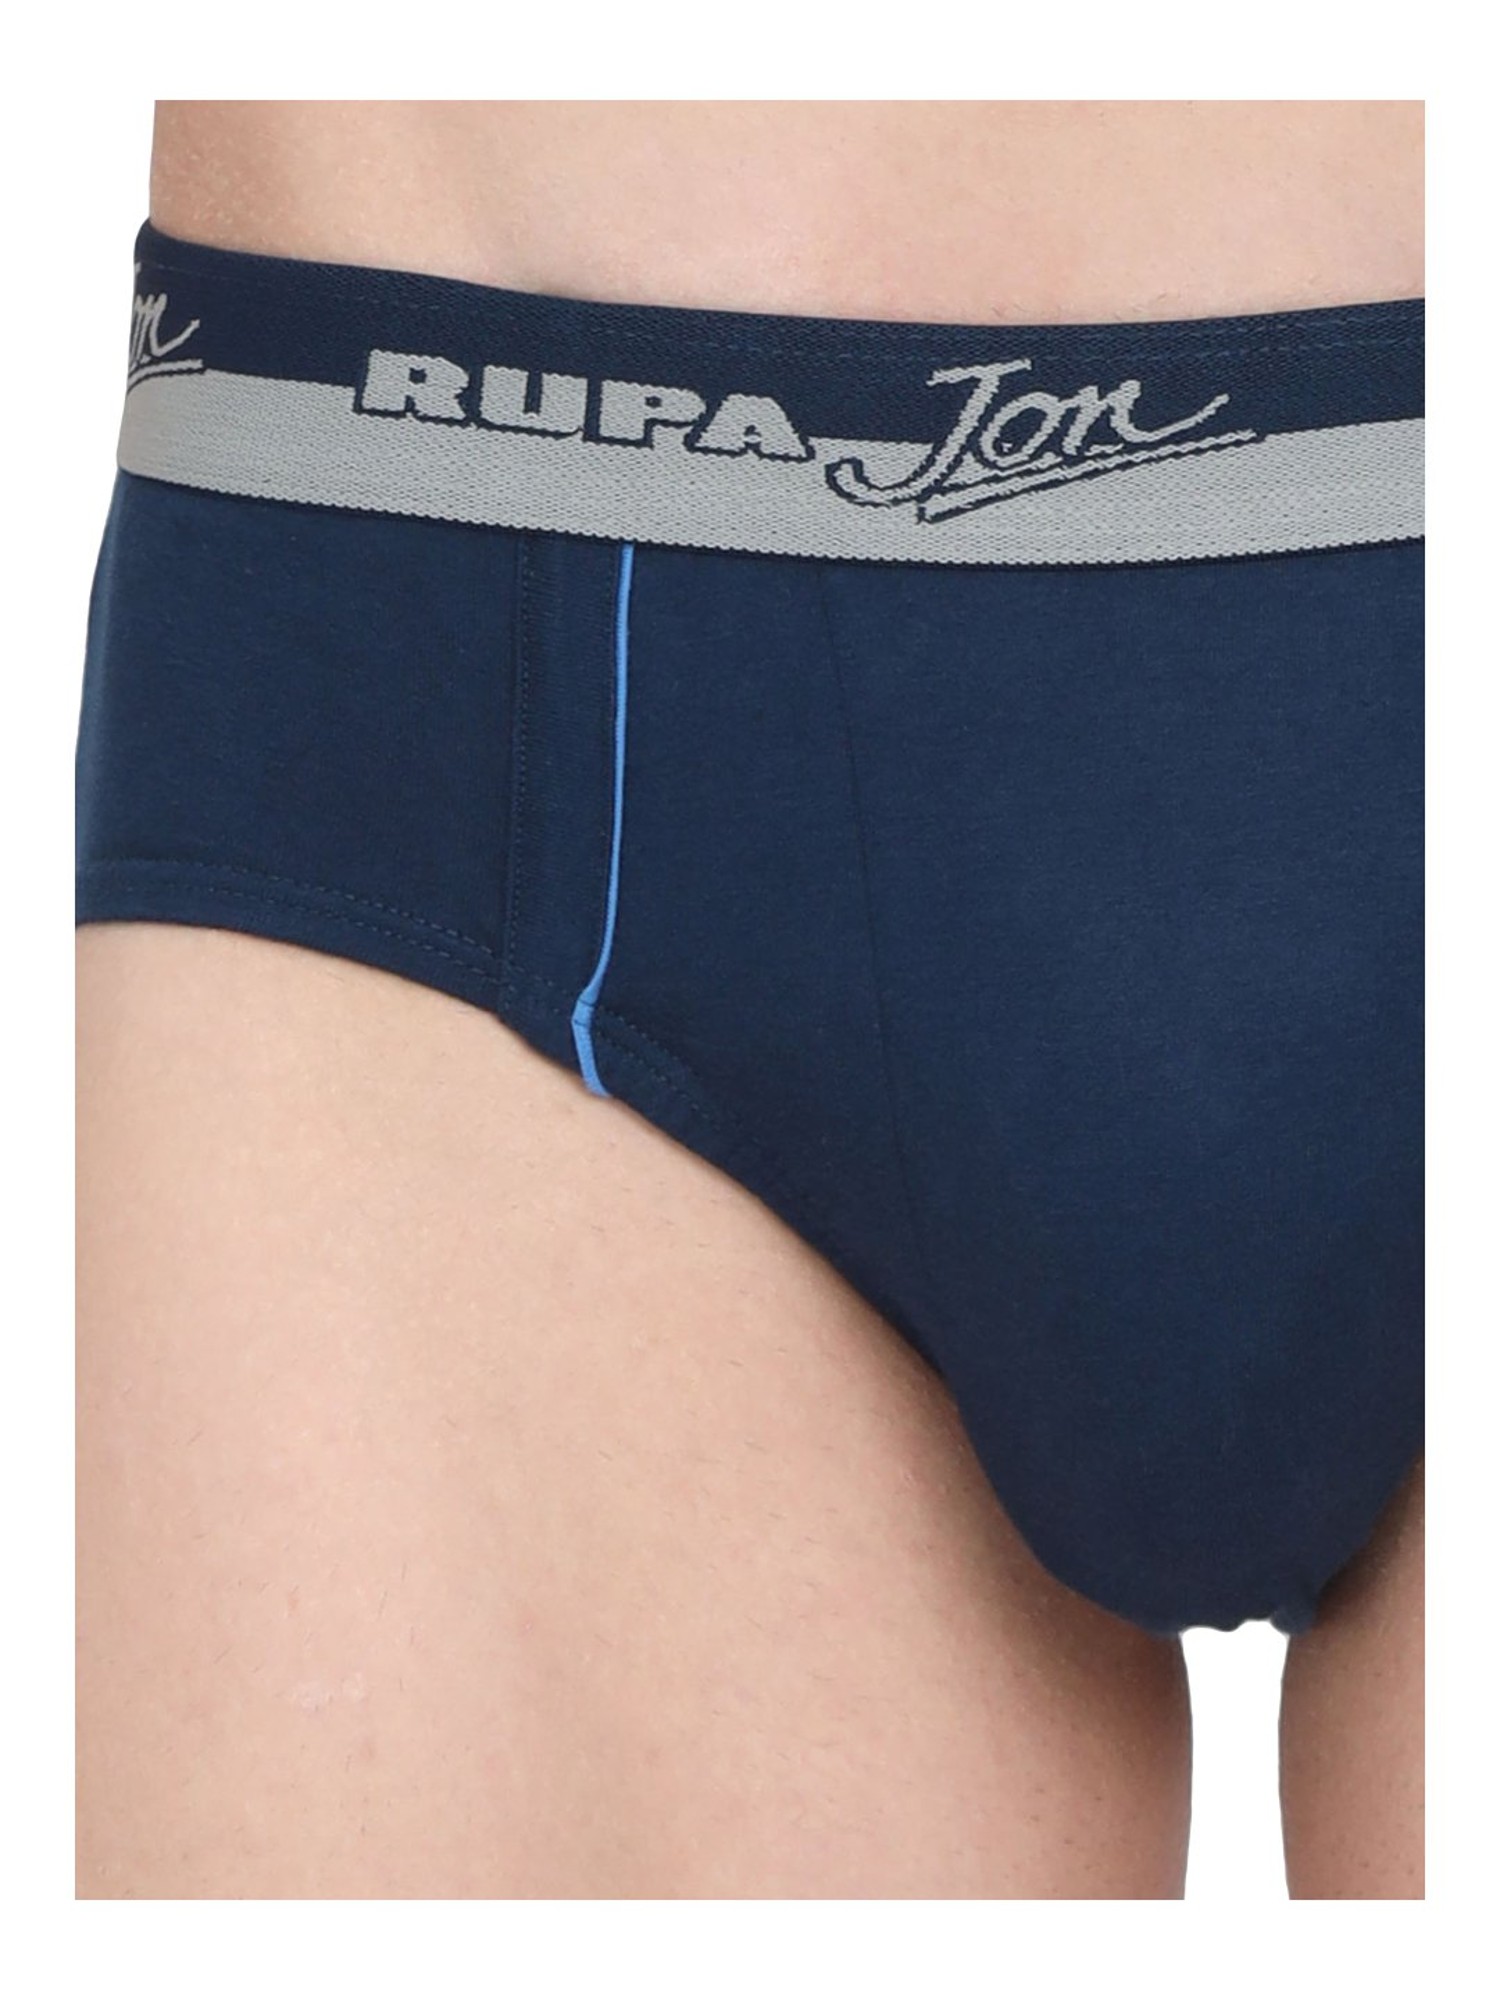 Buy RUPA EURO Men Brief(Pack of 3) on Flipkart